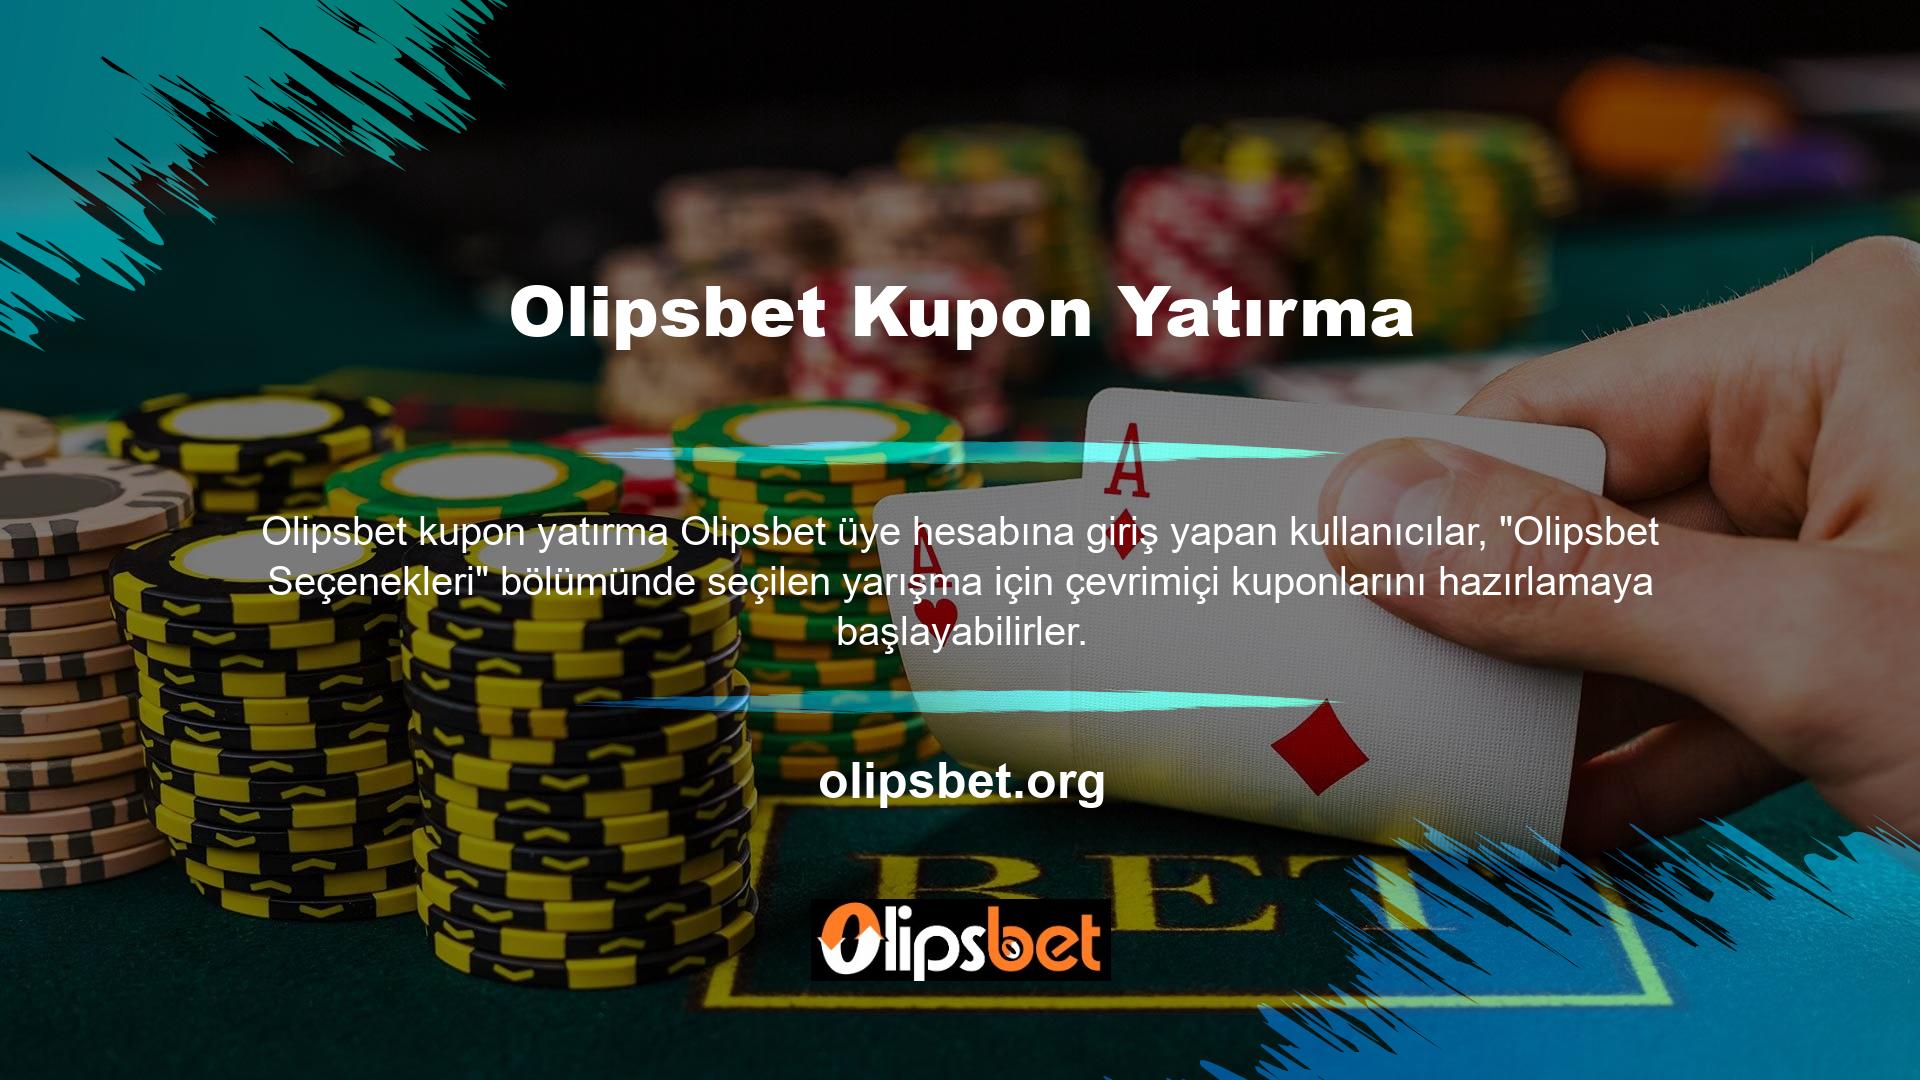 Tüm Olipsbet tahminlerini Olipsbet kuponlarına yazanlar, Olipsbet oynamak için ortak hesaplarından otomatik olarak ödeme yapacak, Olipsbet fiyatını hesaplayacak ve kuponlarını yatıracaktır